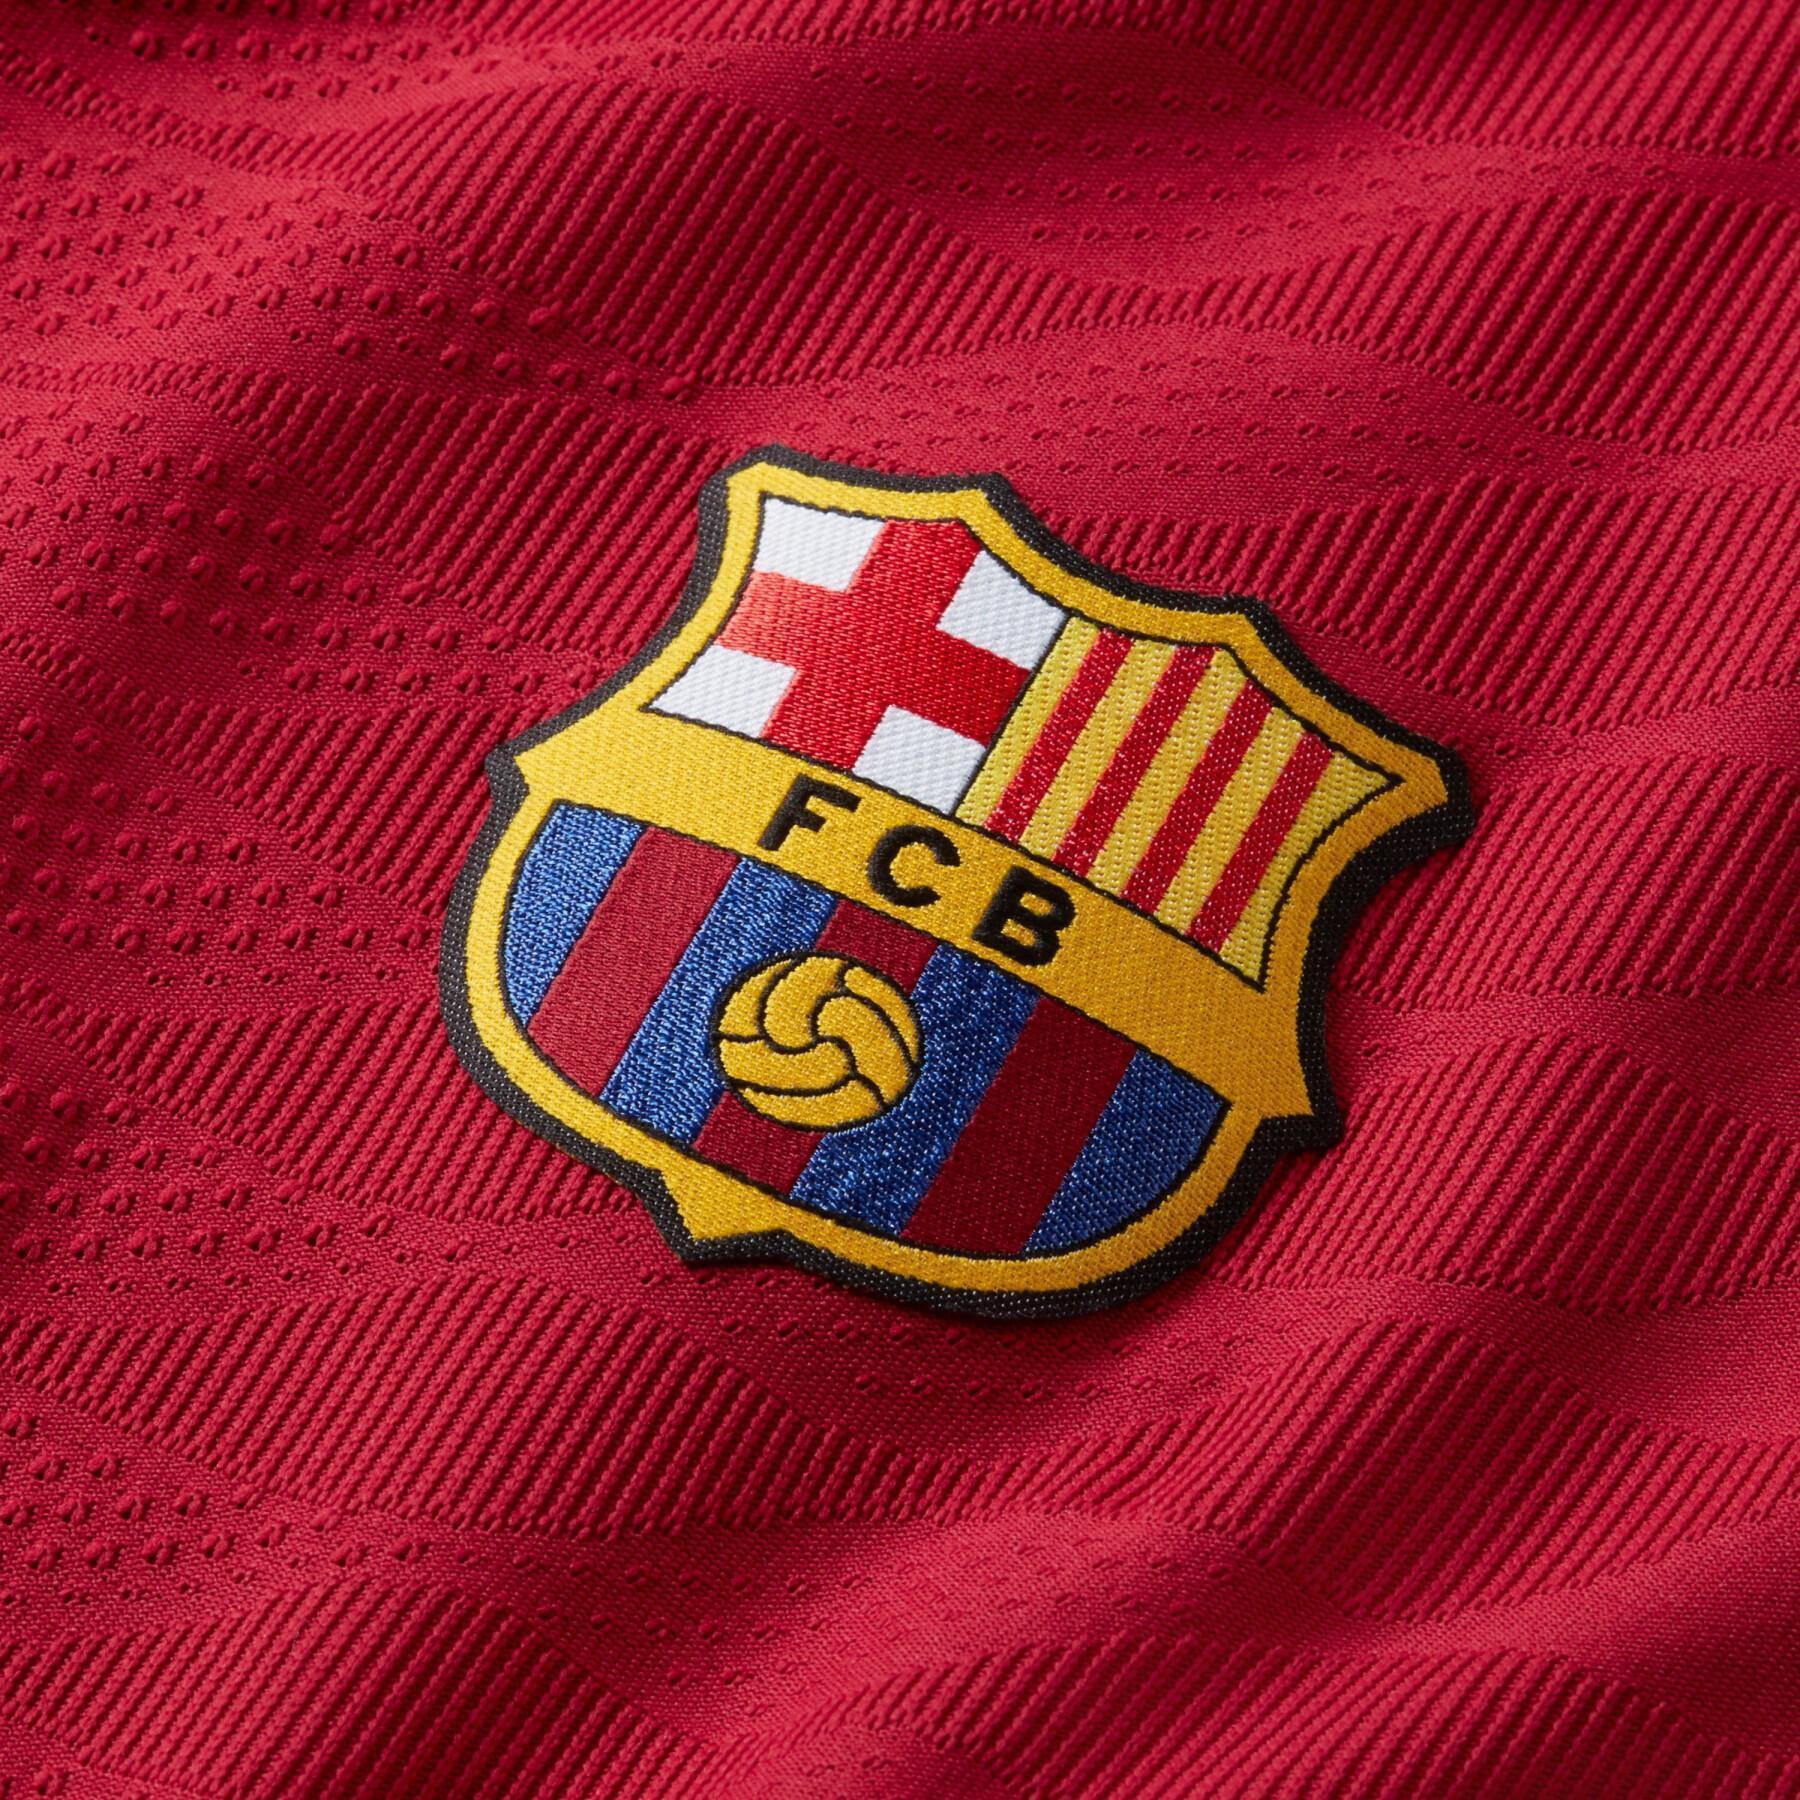 Camiseta de entrenamiento FC Barcelone ELITE 2021/22